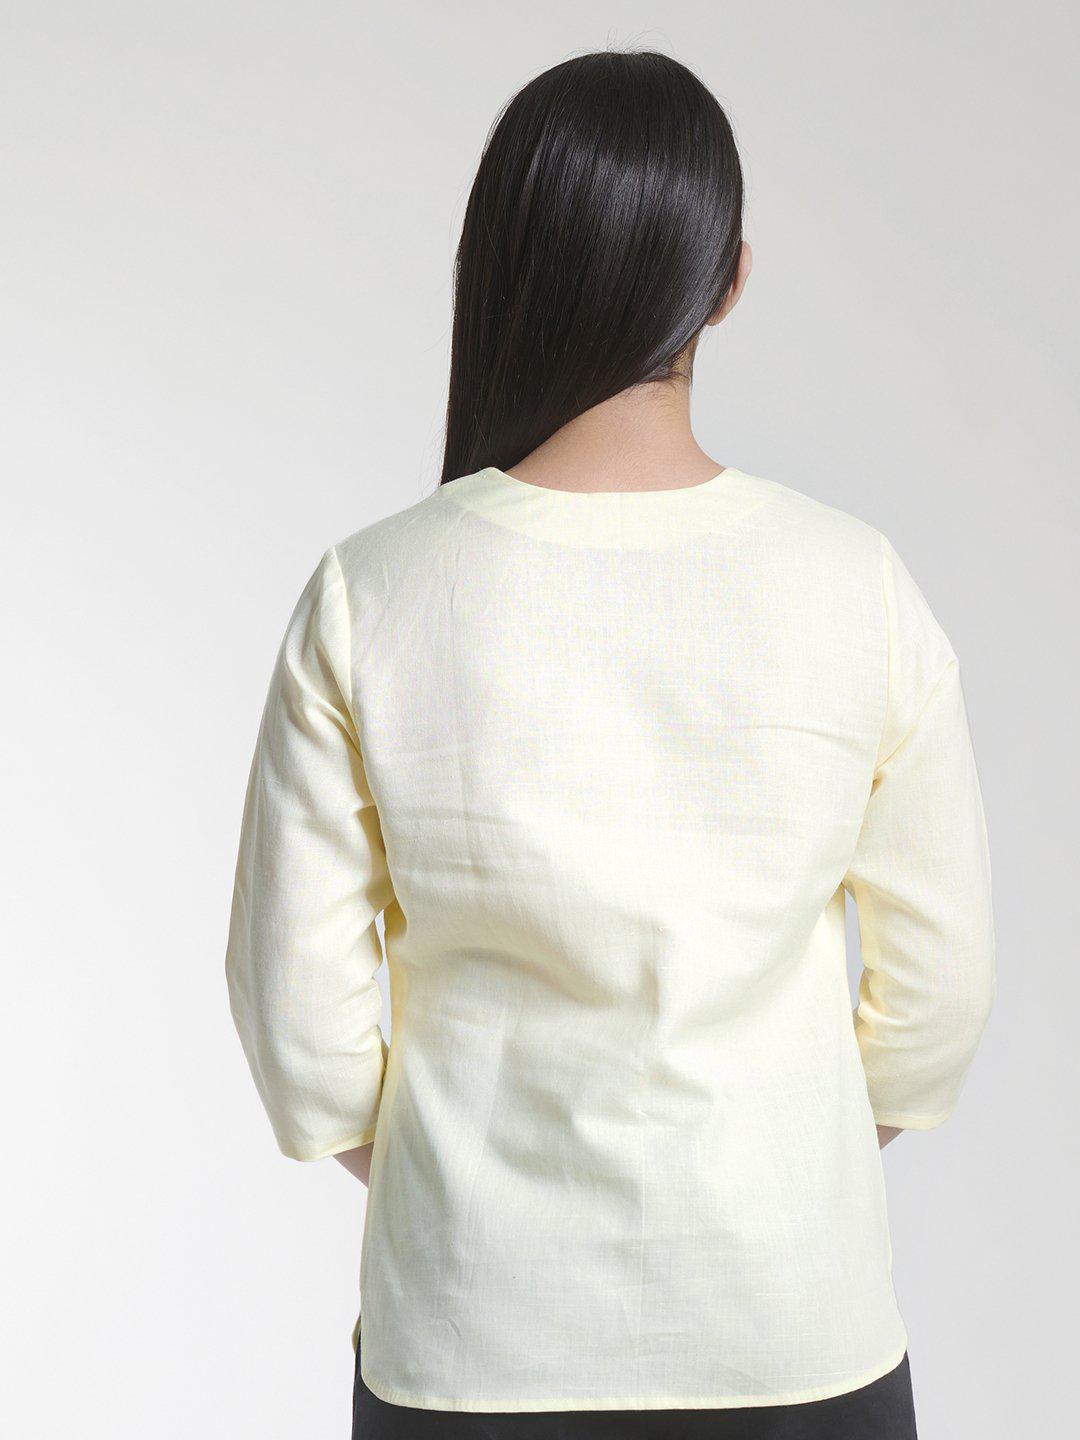 V Neck Linen Cotton Top For Women - Lemon Yellow